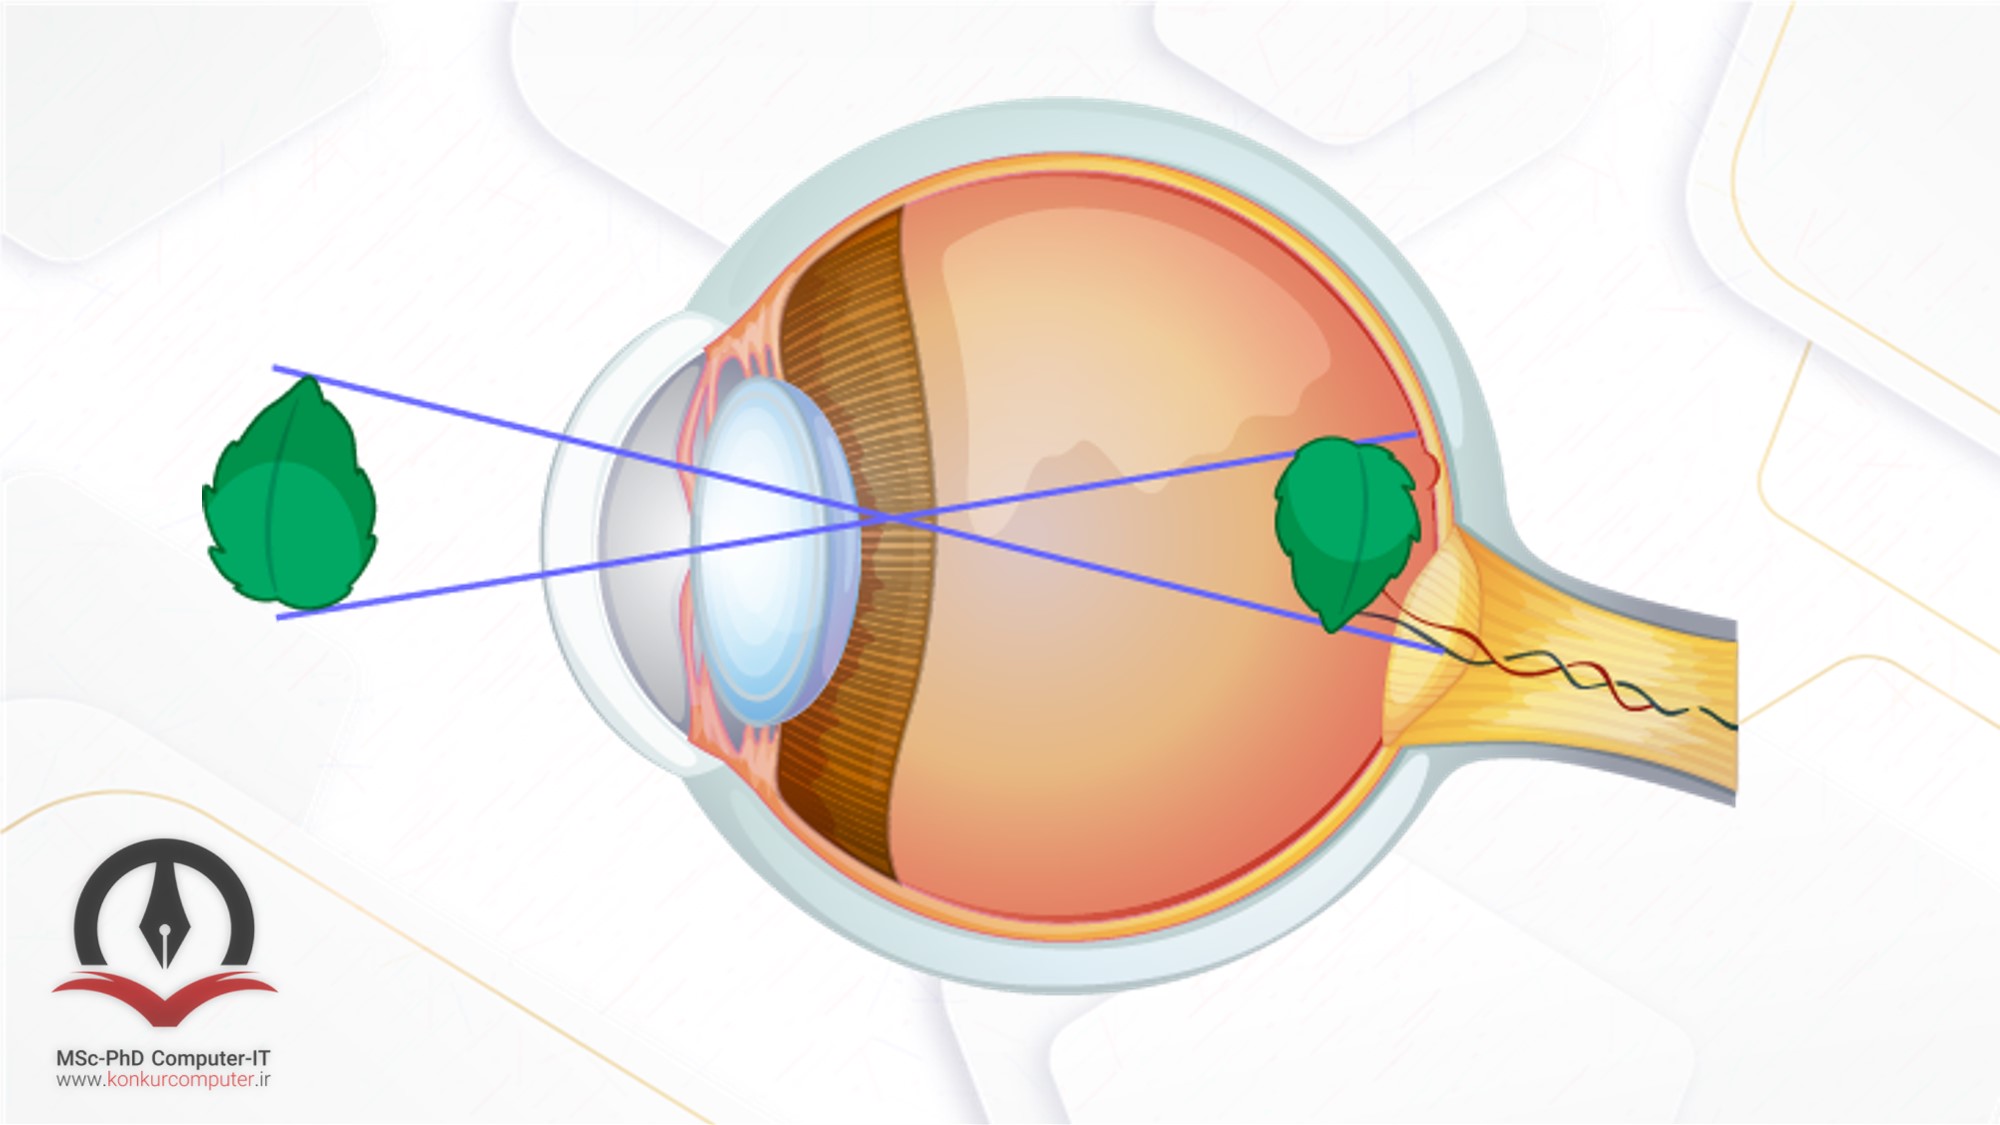 تصویر چشم انسان و تشکیل عکس وارونه‌ی برگ در شبکیه چشم که در پشت آن قرار دارد